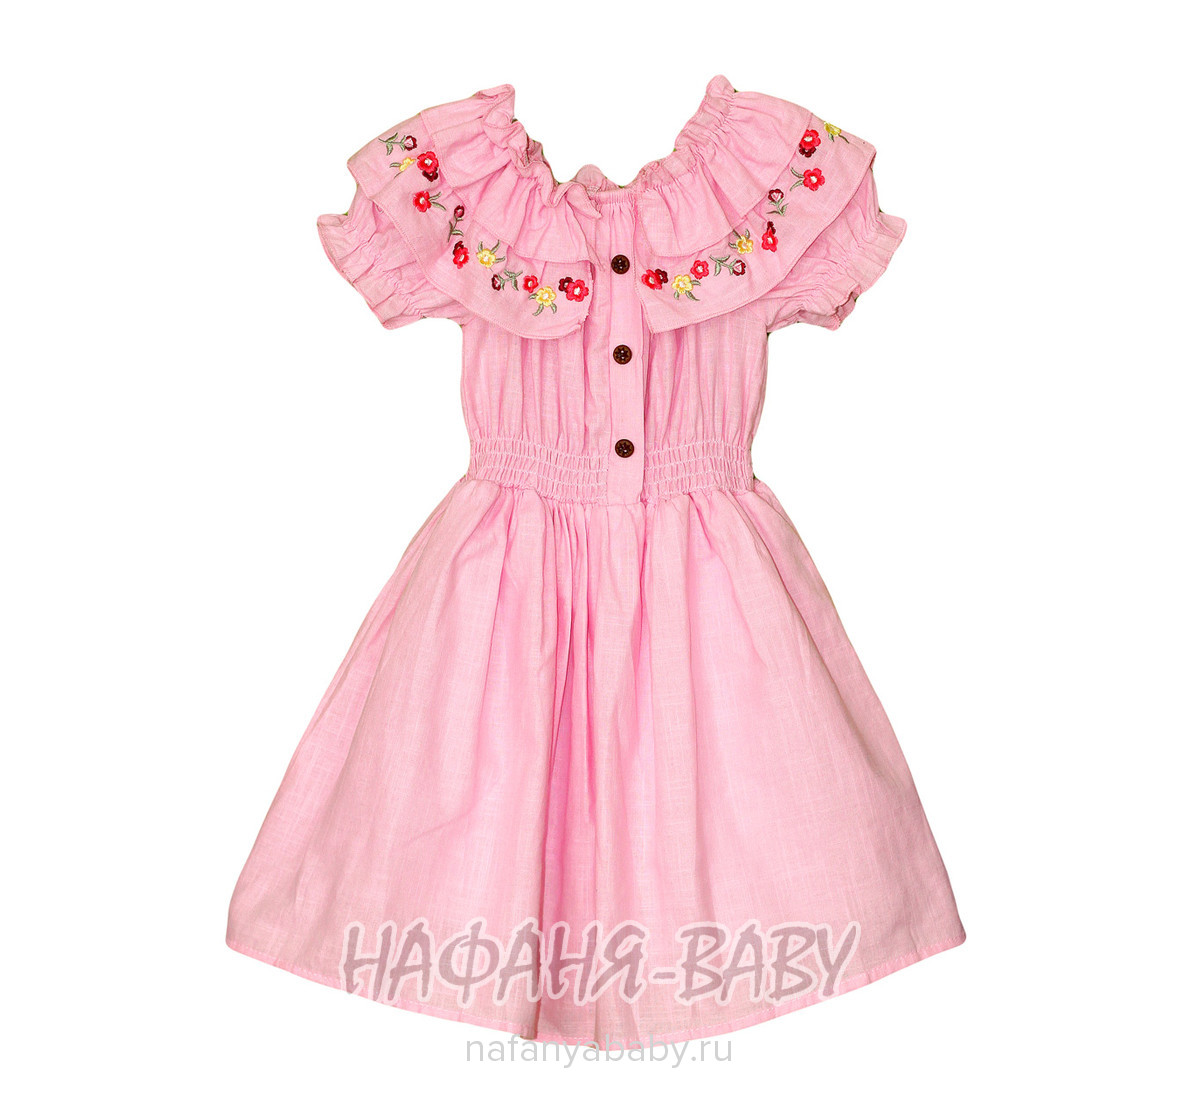 Детское платье AYCITY арт: 2802, 5-9 лет, цвет розовый, оптом Турция